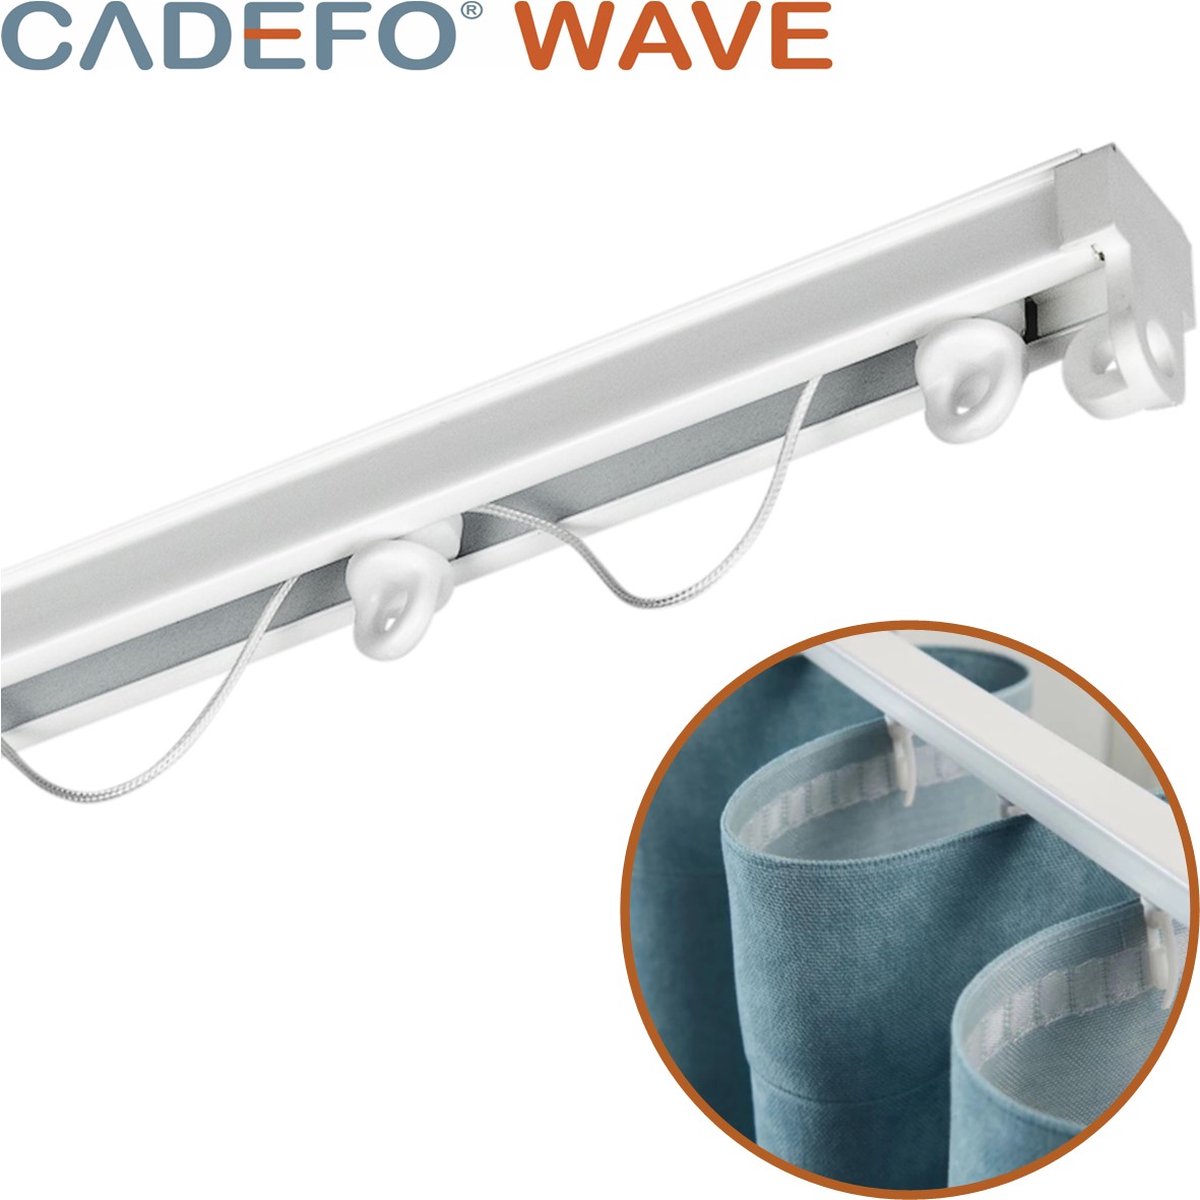 CADEFO WAVE (301 - 350 cm) Gordijnrails - Compleet op maat! - UIT 1 STUK - Leverbaar tot 6 meter - Plafondbevestiging - Lengte 324 cm